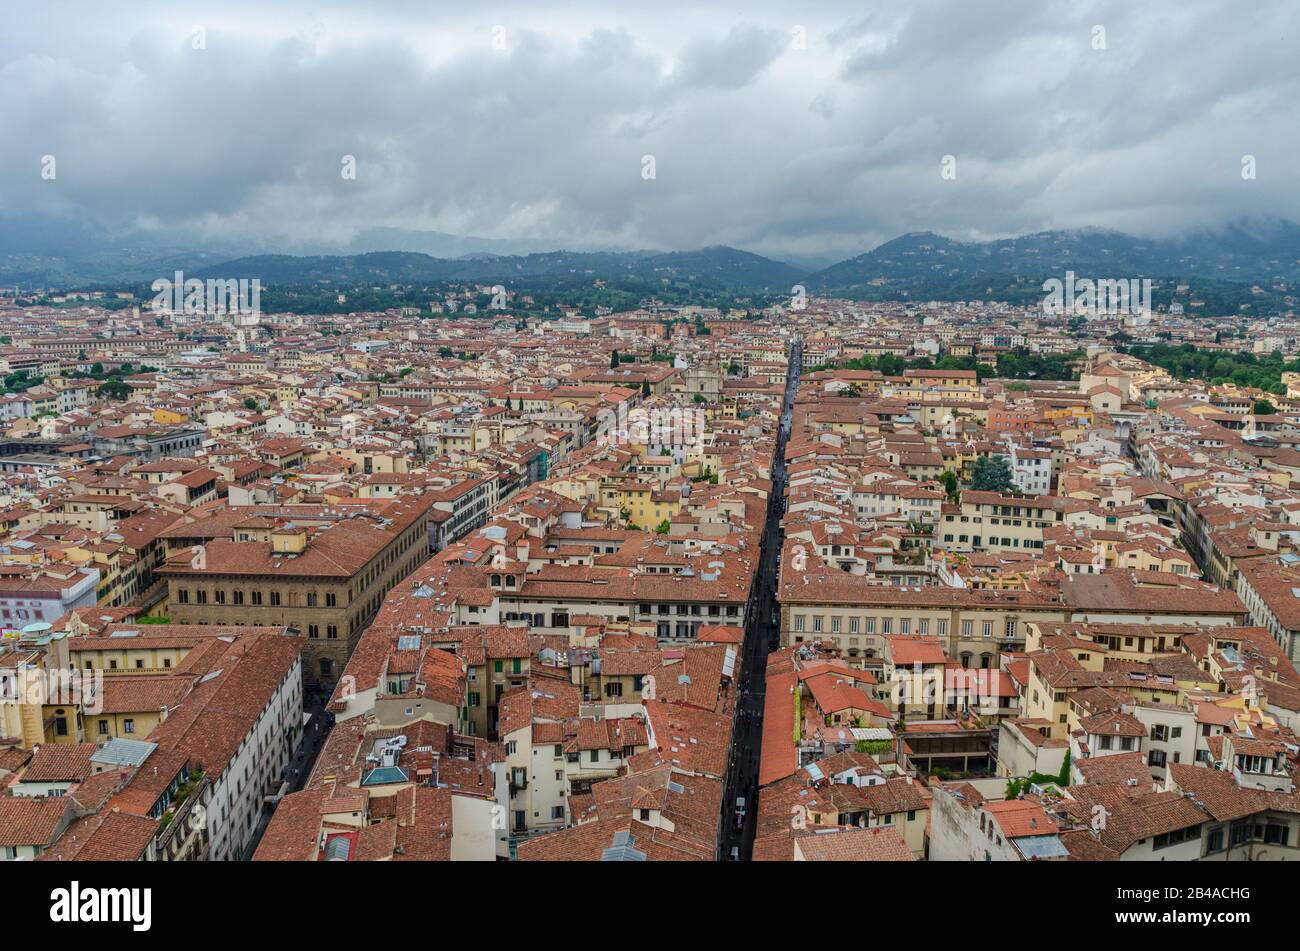 Vue imprenable sur la ville de Florence depuis le Campanile di Giotto de Florence, Italie Banque D'Images